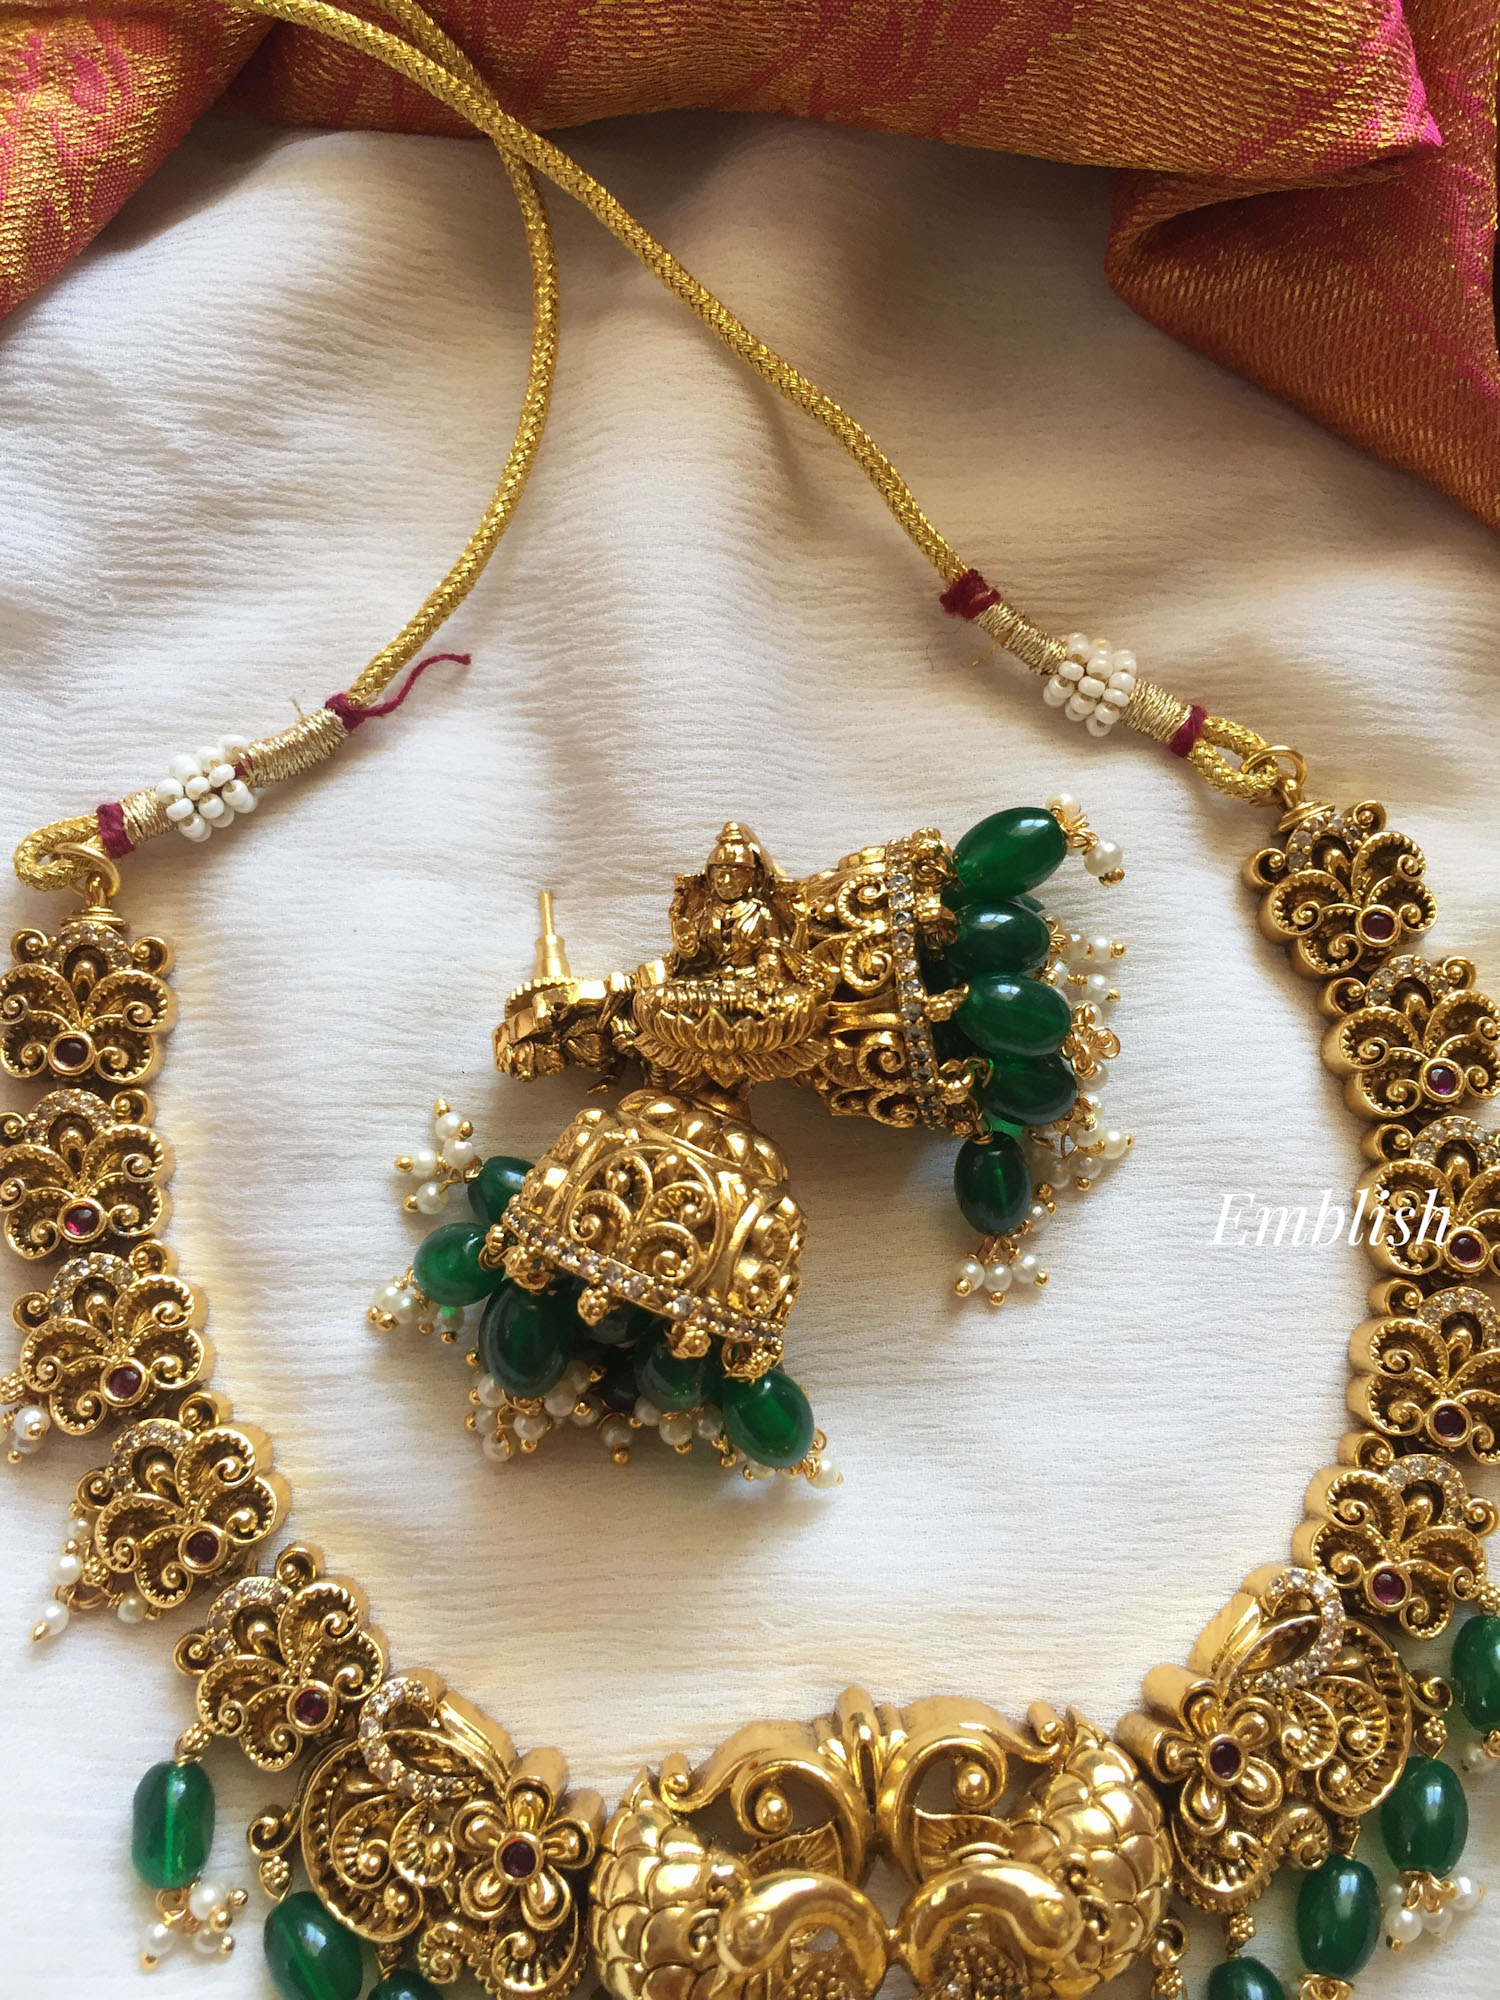 Antique 3D Lakshmi with Double Peacock Short Neckpiece - Green Beads